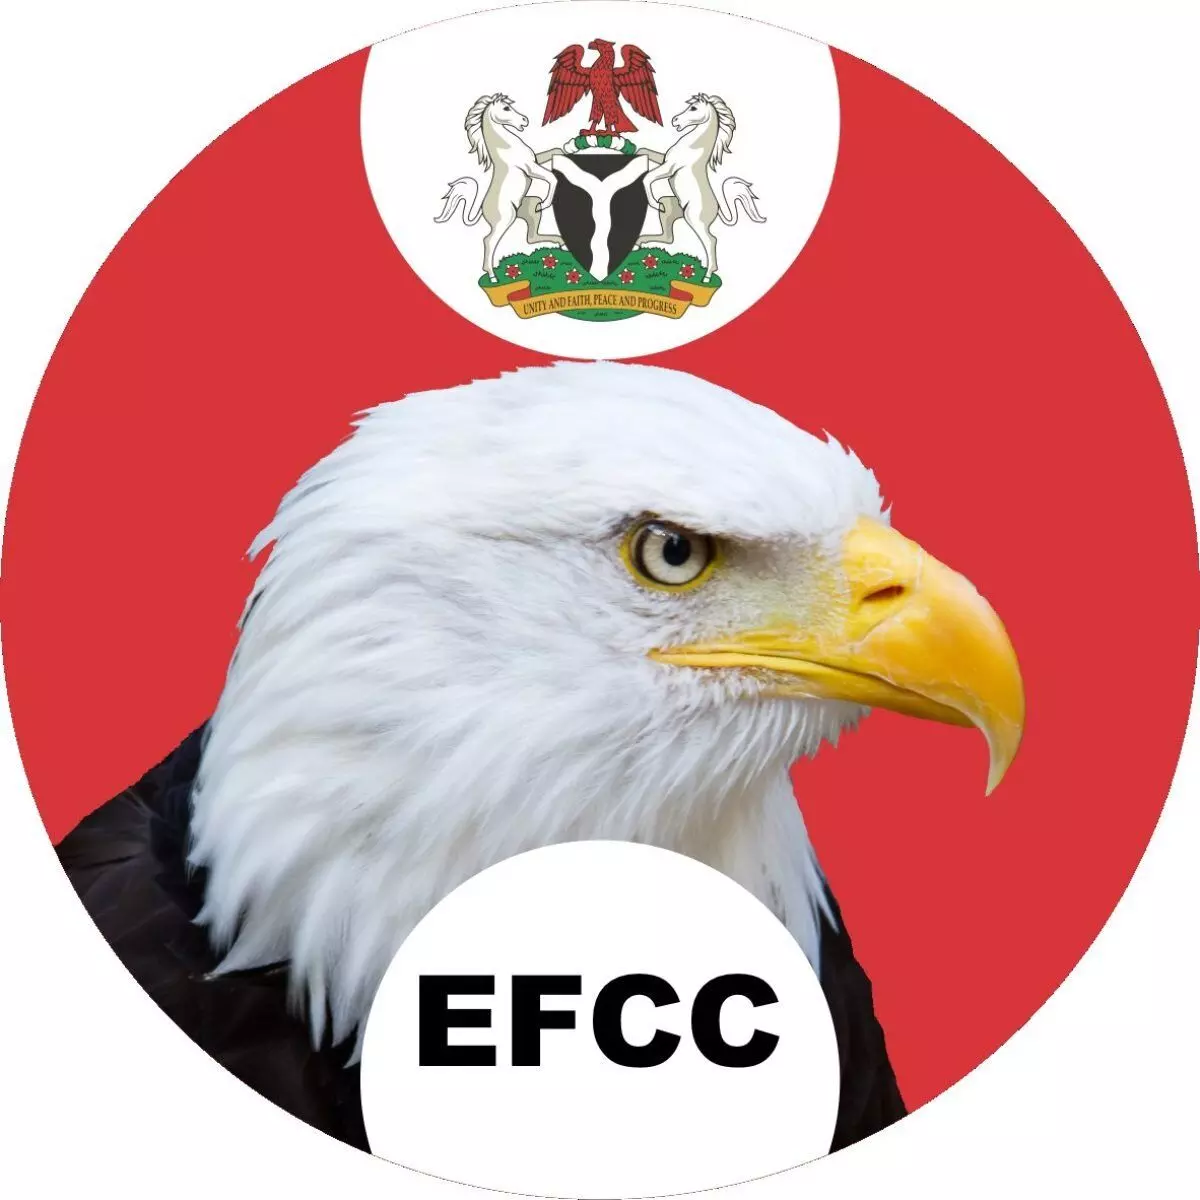 EFCC advocates corruption studies in Nigerian school curriculum